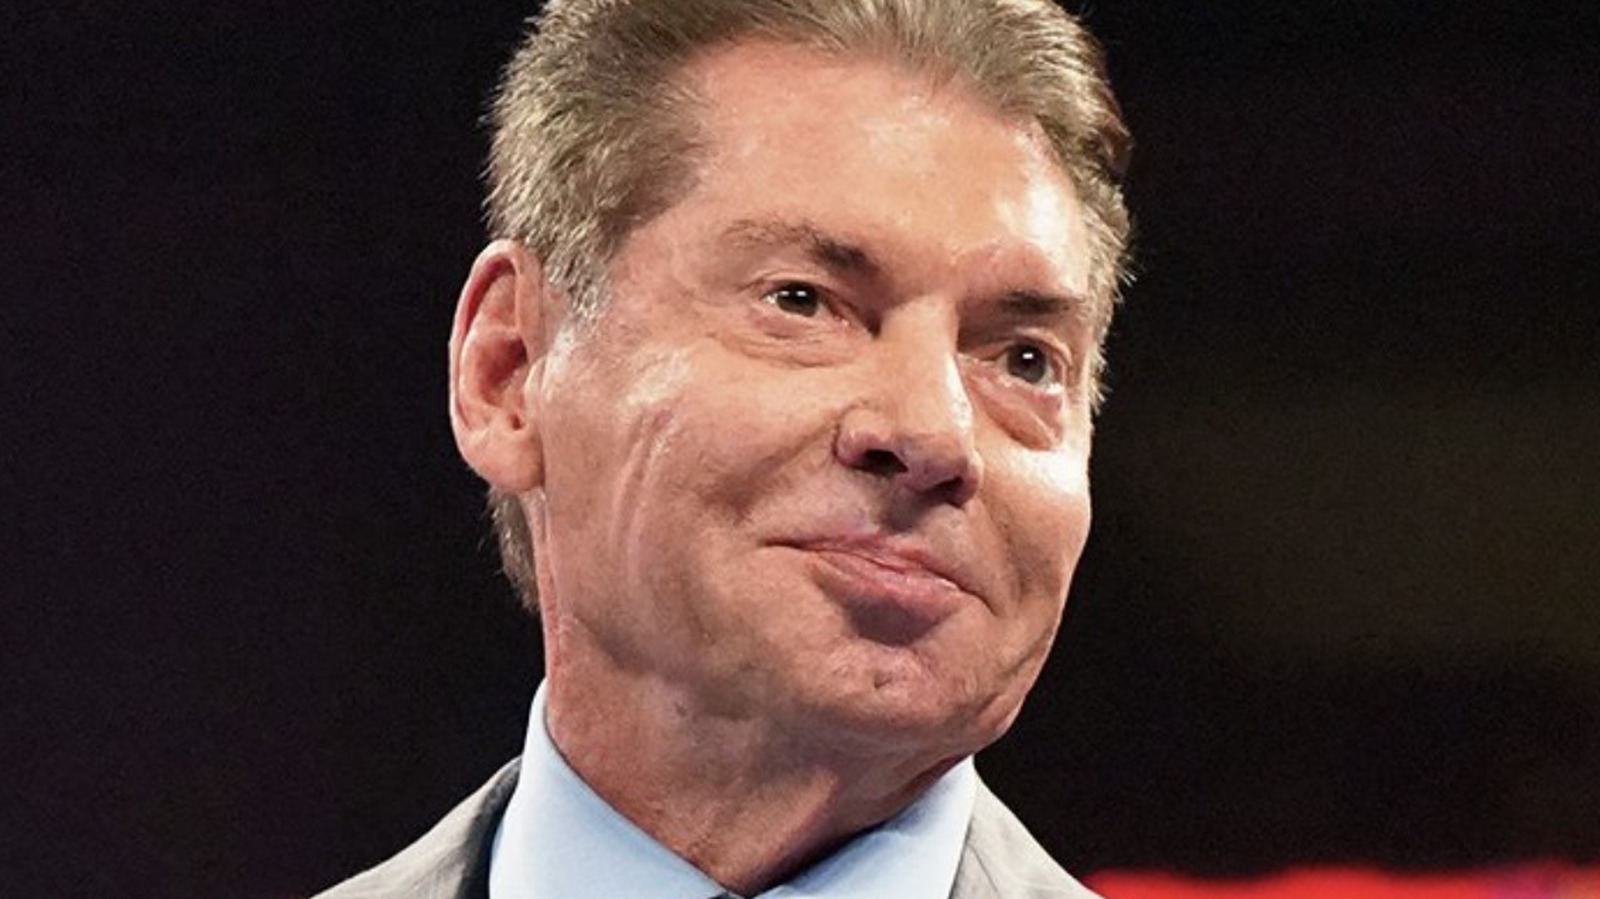 Detalles tras bambalinas sobre la reacción en el vestuario a la aparición de Vince McMahon en WWE Raw